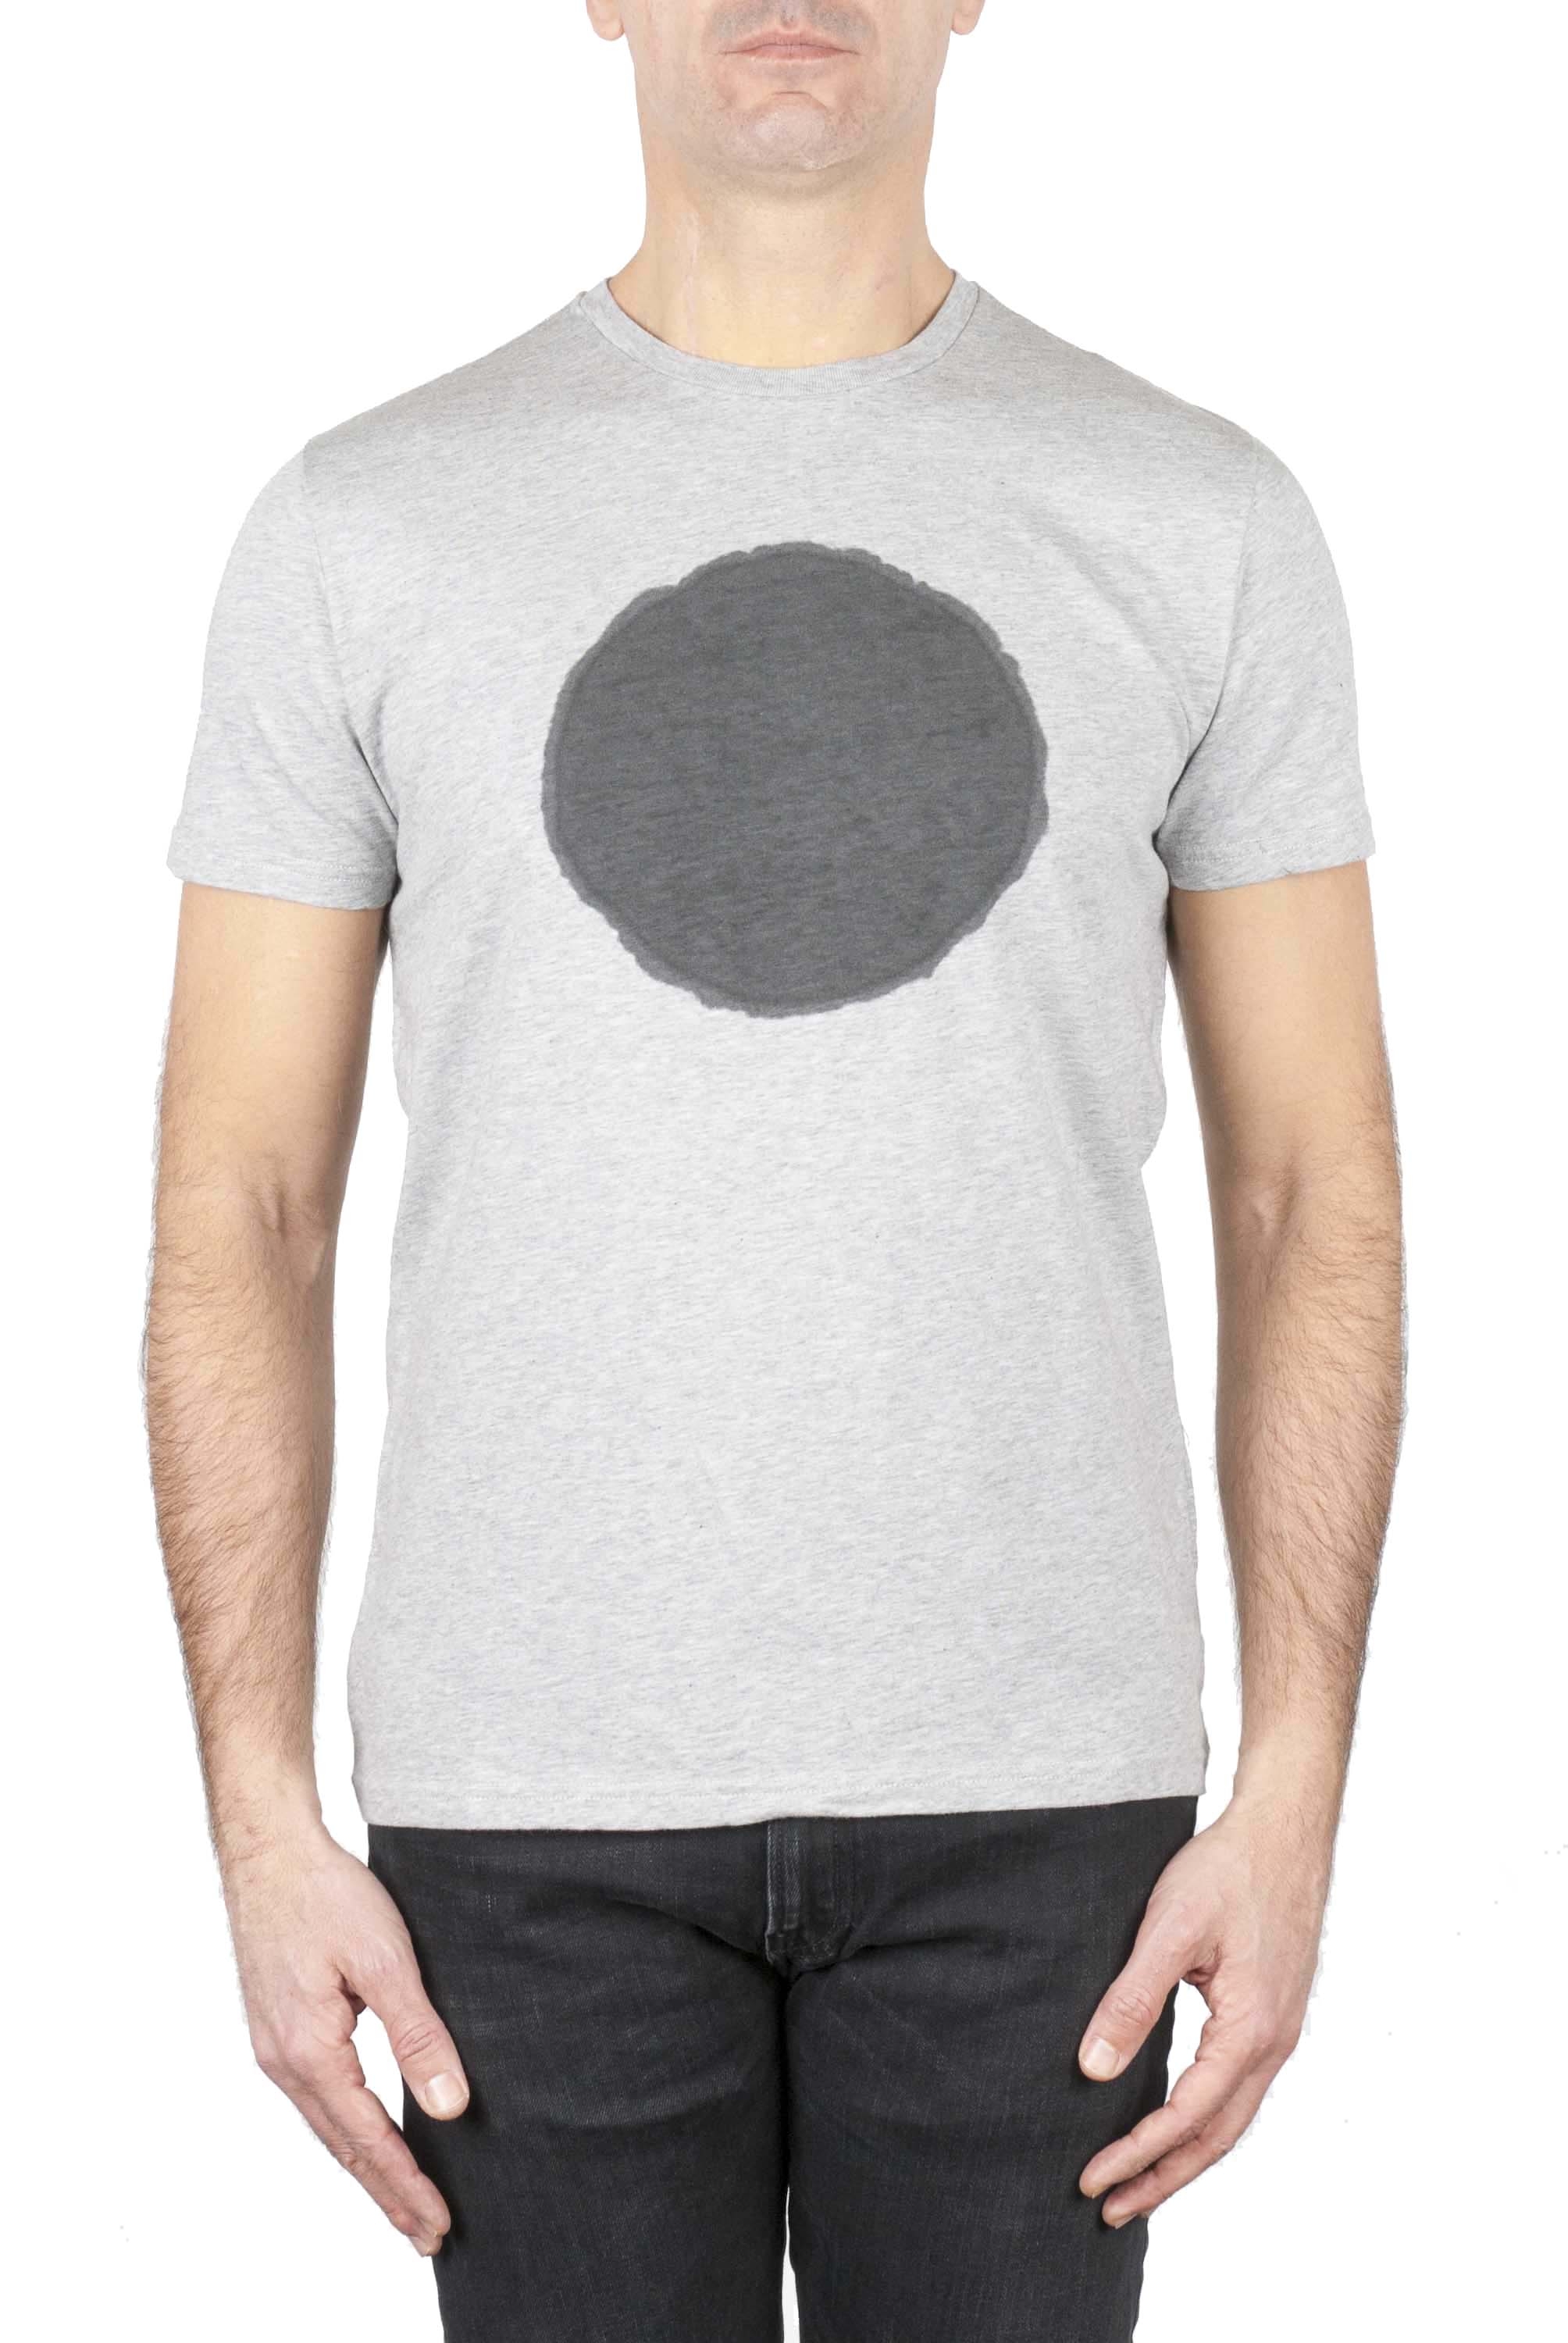 SBU 02846_2020SS Clásica camiseta de cuello redondo manga corta de algodón negra y gris gráfica impresa 01